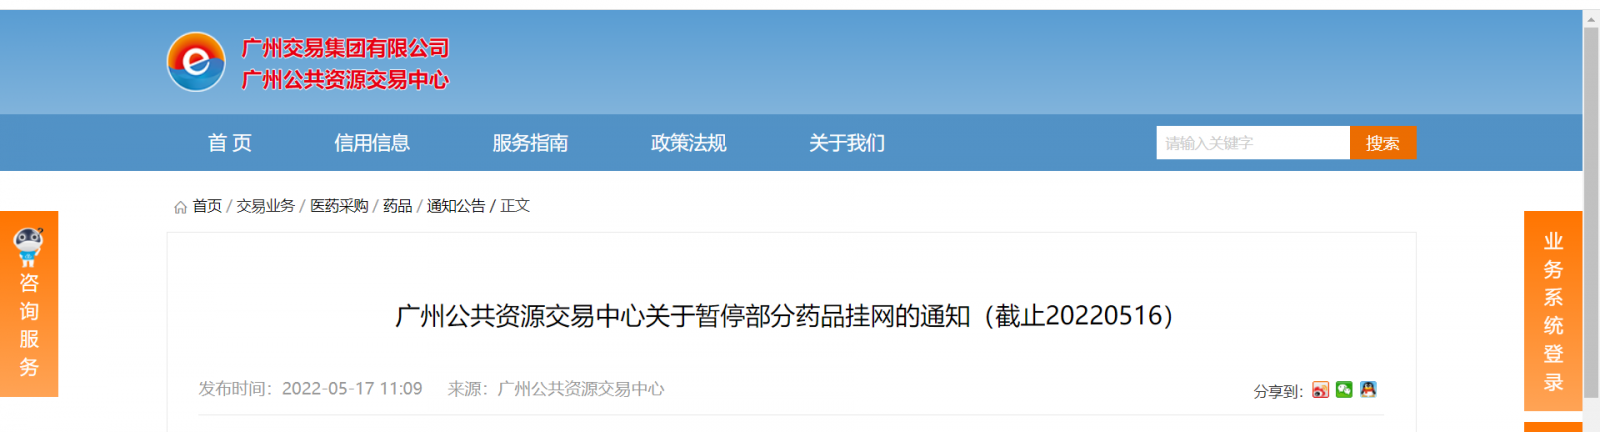 广州部分药品暂停挂网 涉及14家药企 17批药品